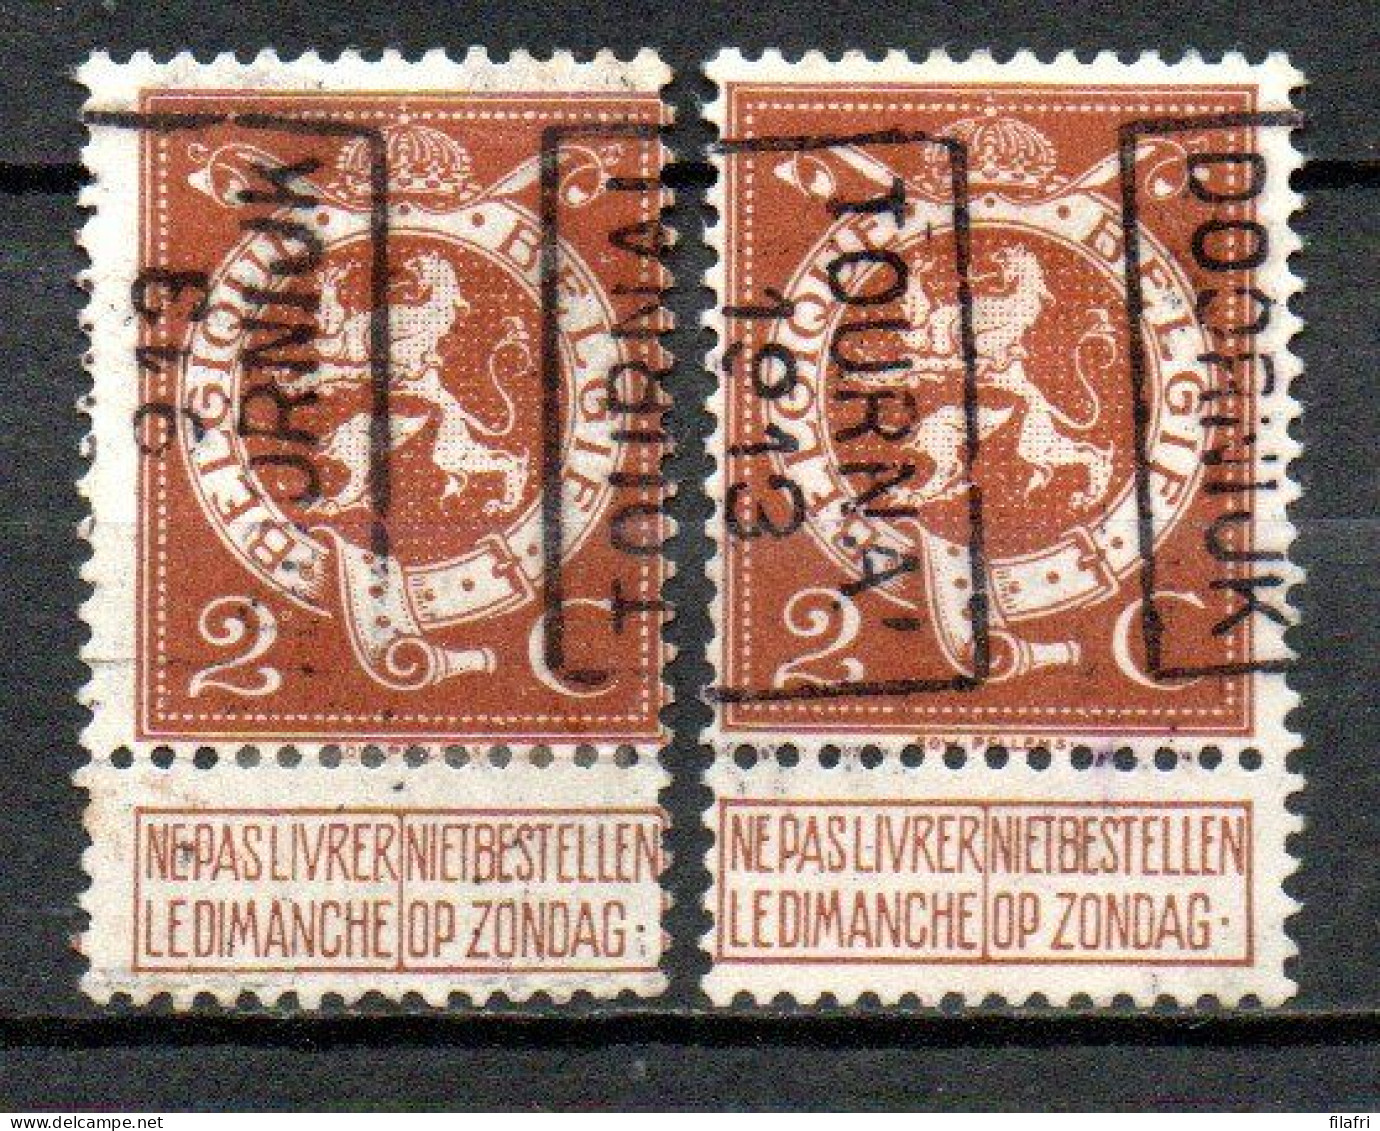 2241 Voorafstempeling Op Nr 109 - TOURNAI 1913 DOORNIJK - Positie A & B - Roller Precancels 1910-19